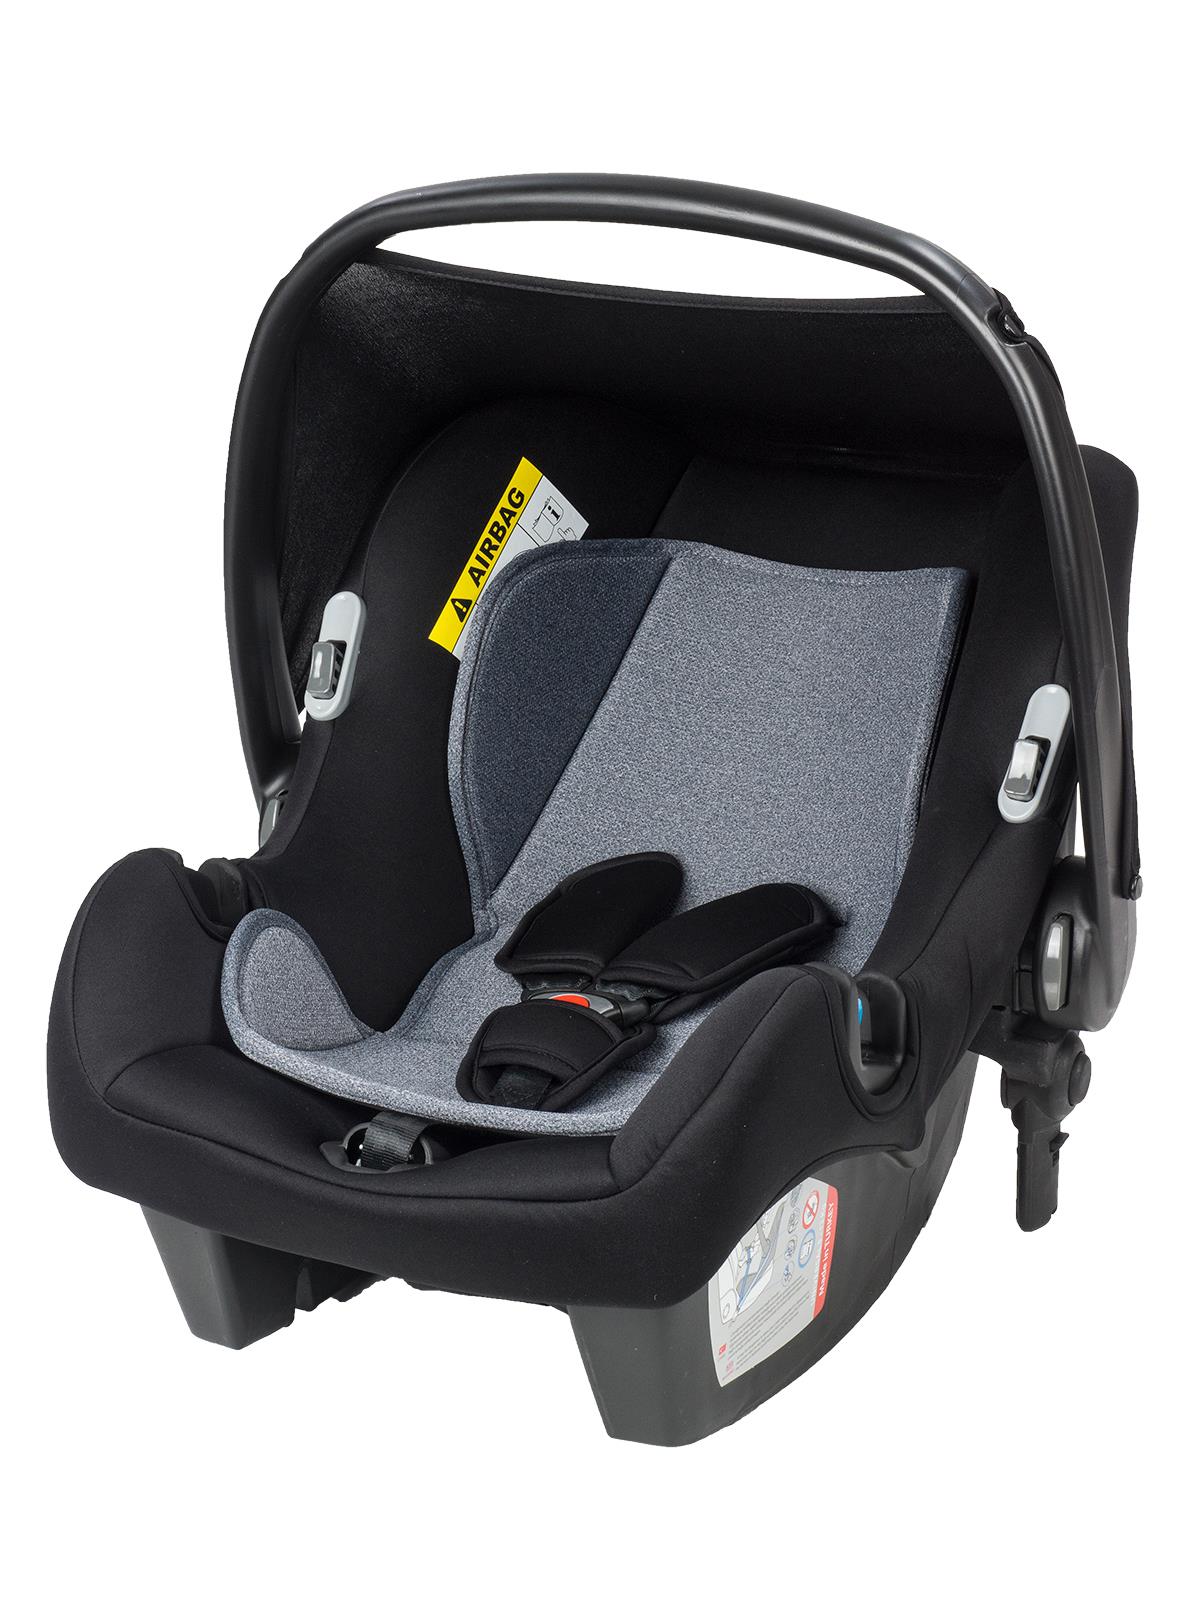 Baby Care Astra Safe Trio Travel Sistem Bebek Arabası Siyah Şase Gri